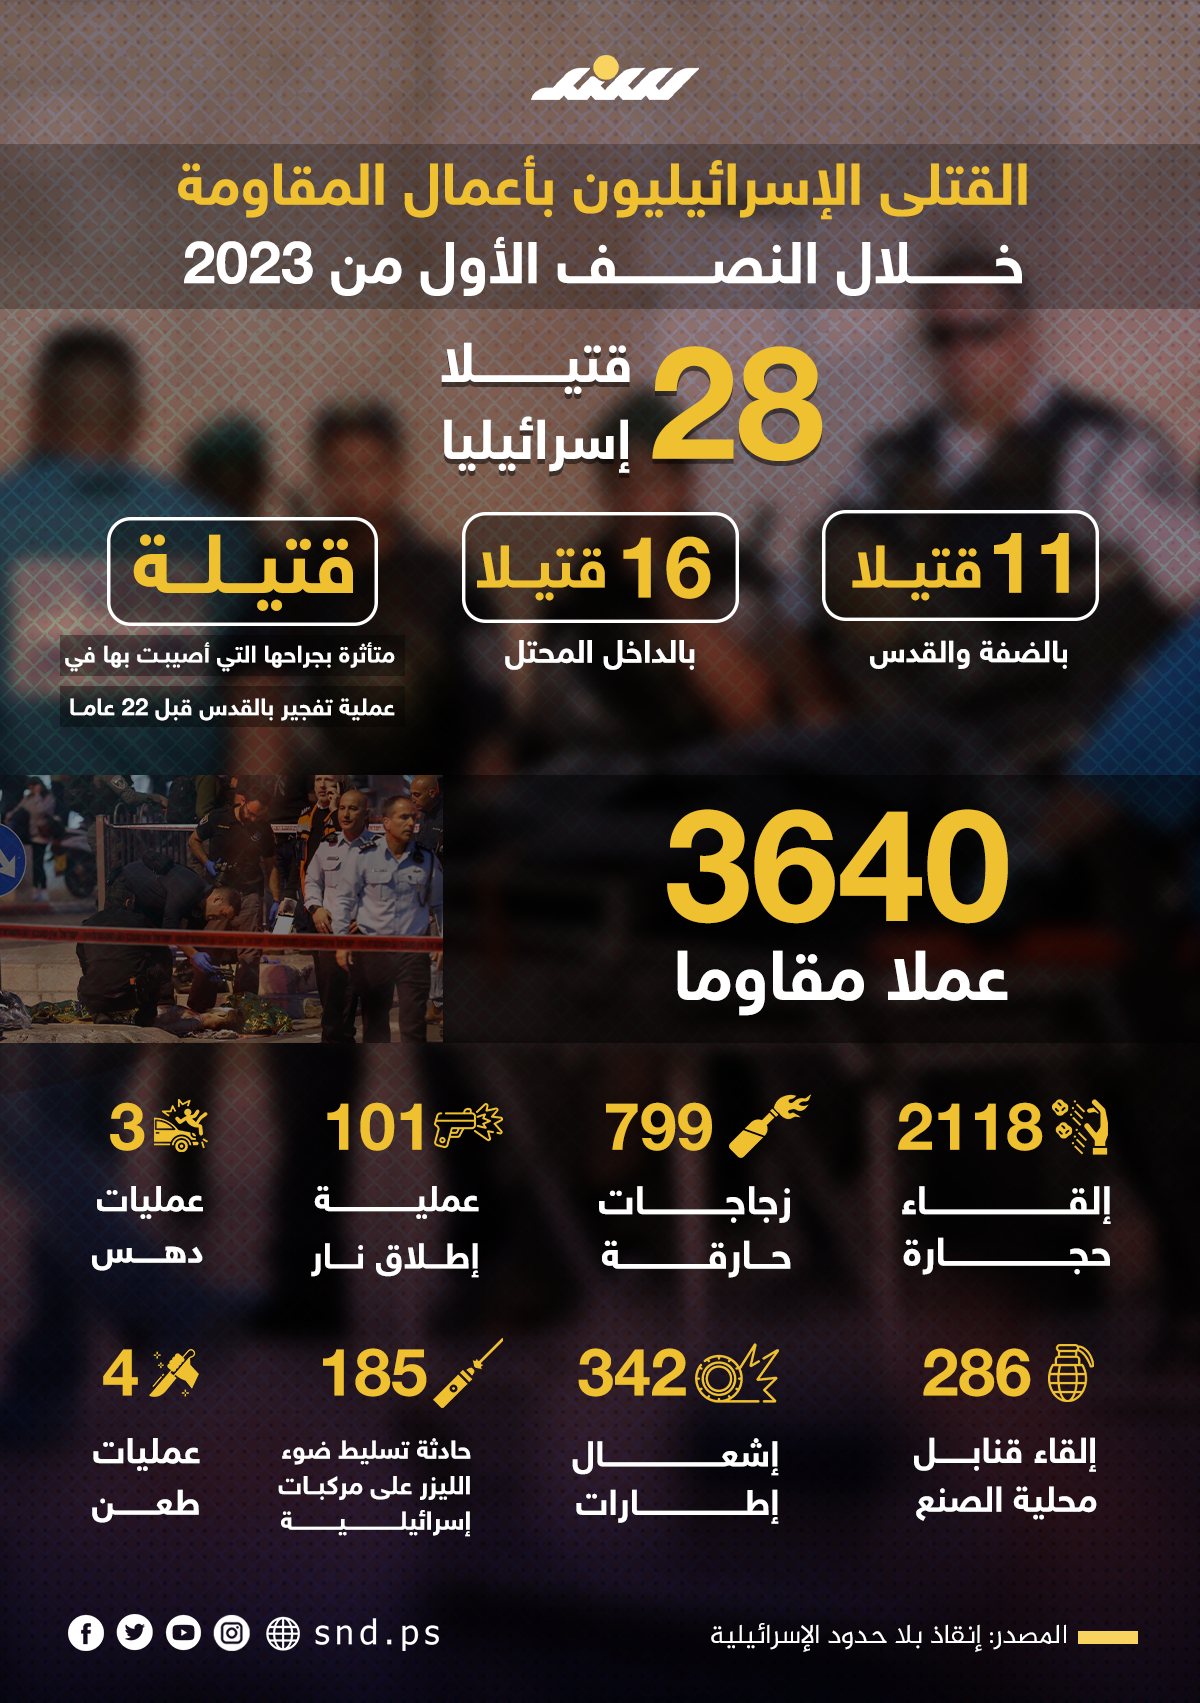 28 قتيلًا في صفوف الاحتلال خلال النصف الأول من العام الجاري (2).png